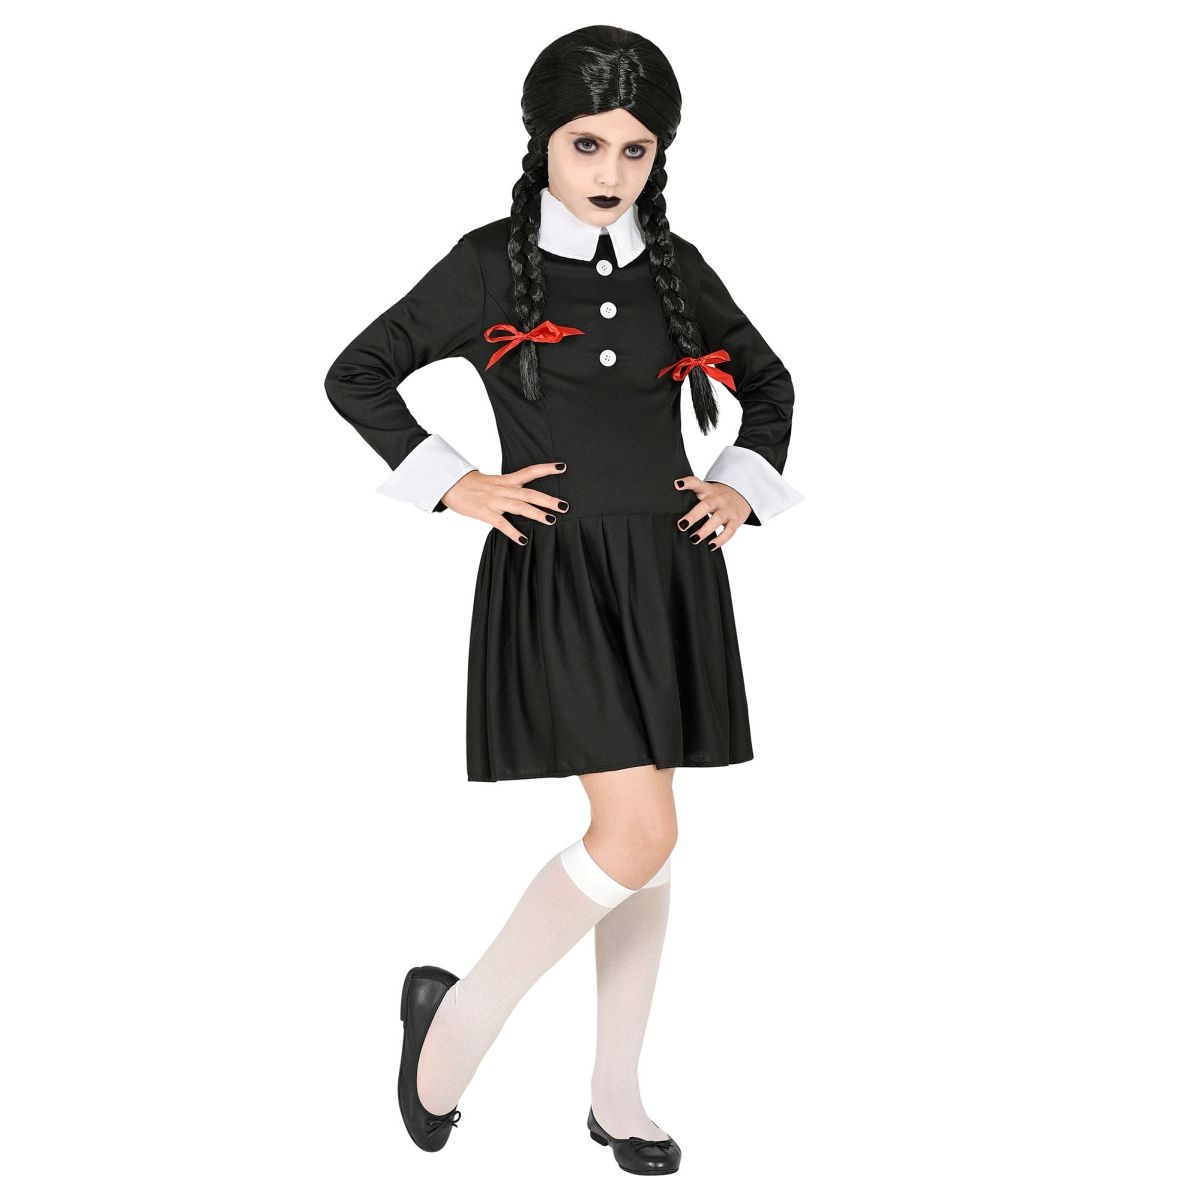 Dark Girl Kleid Schulmädchen Look Schauriges Kinderkostüm Halloween Outfit  158 cm / 11-13 Years